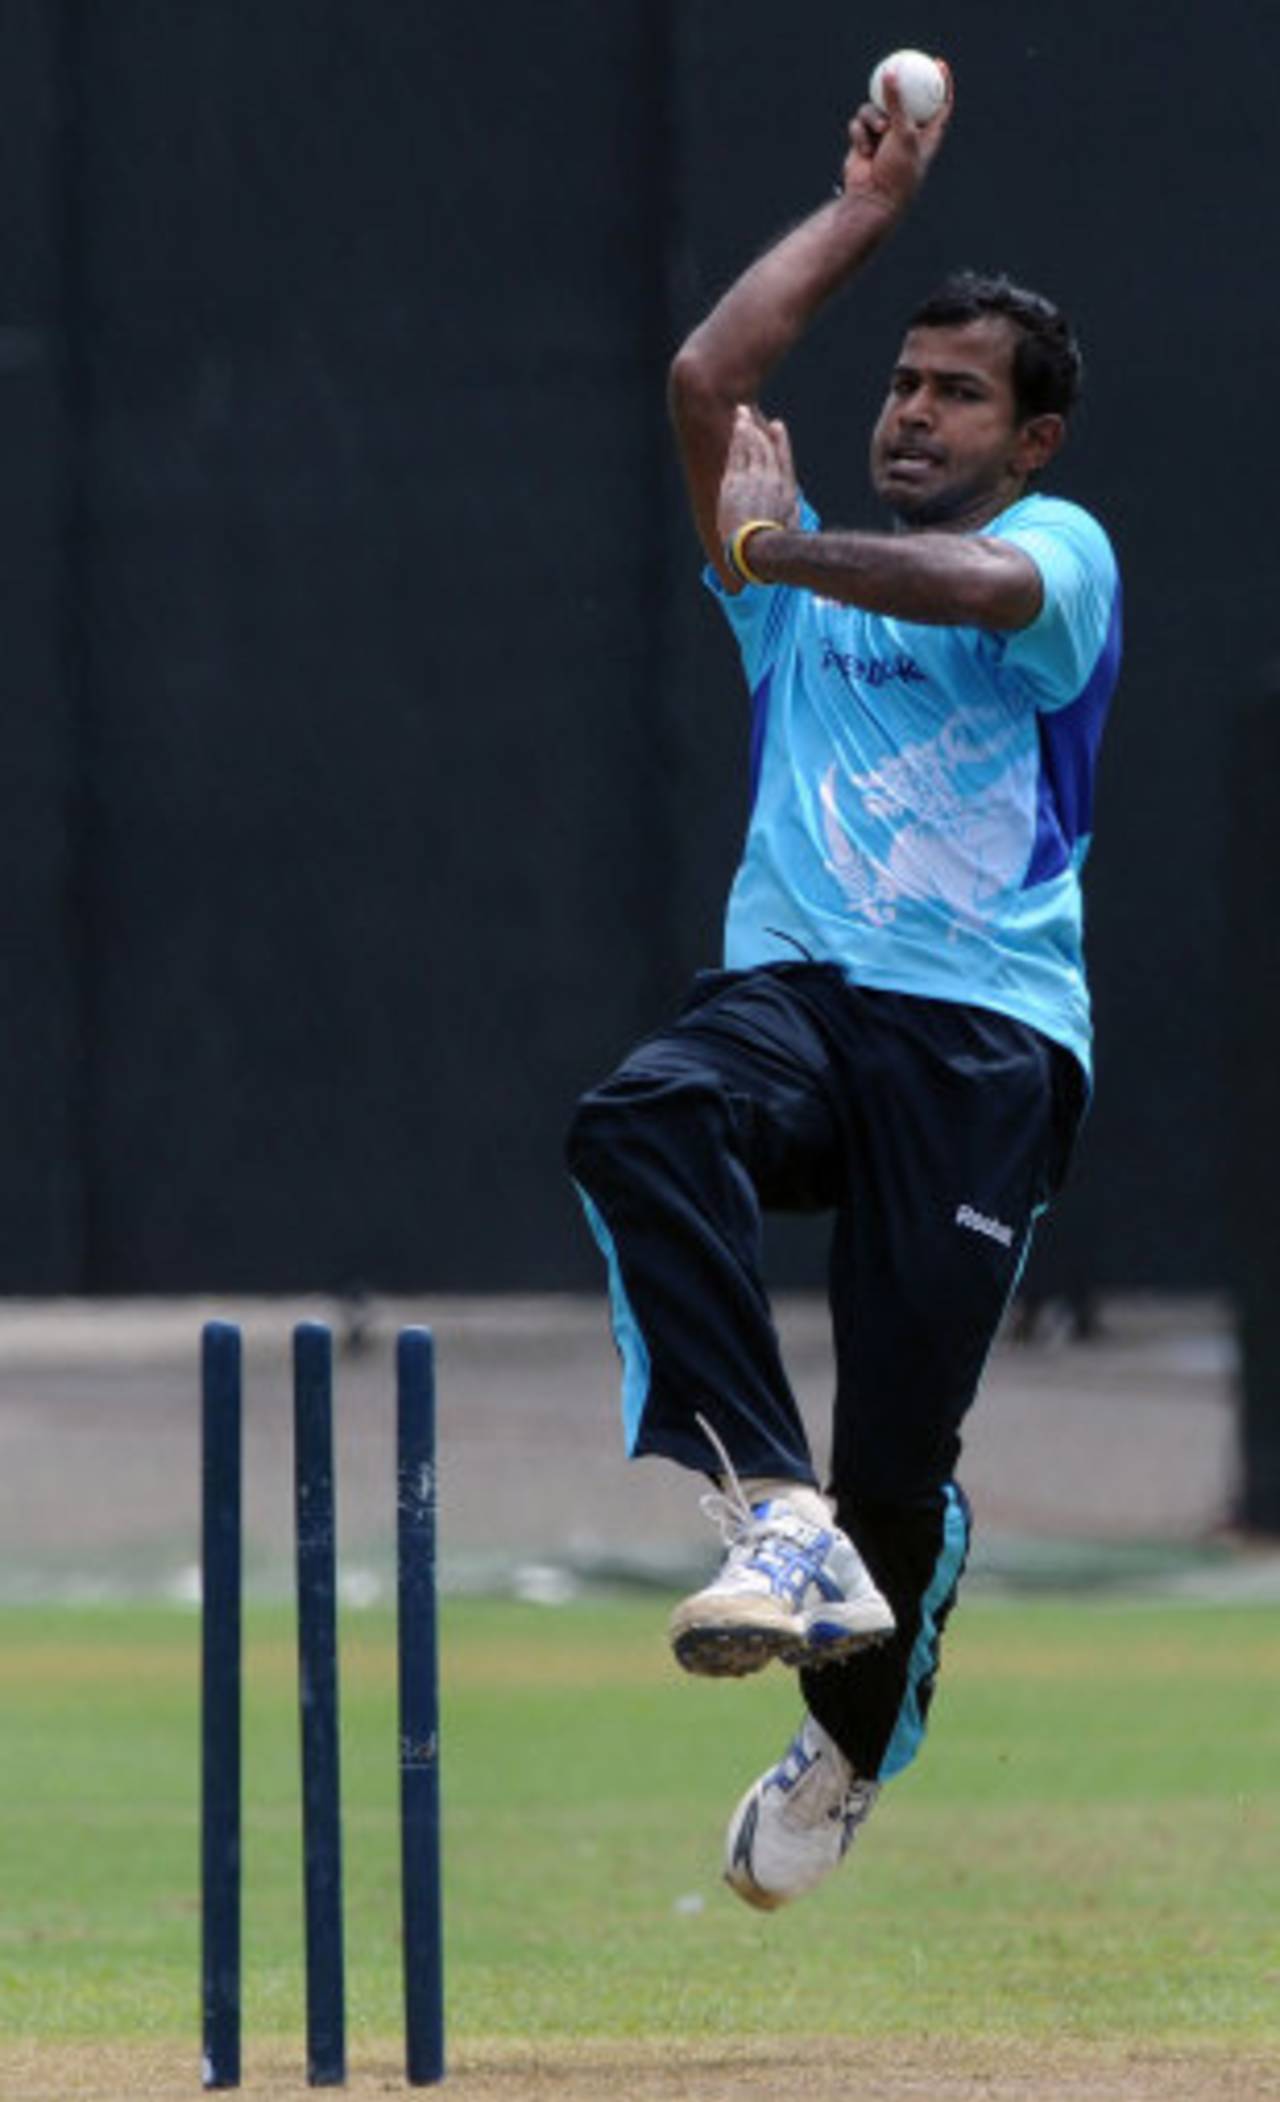 Nuwan Kulasekara hones his skills at practice, Colombo, June 12, 2012